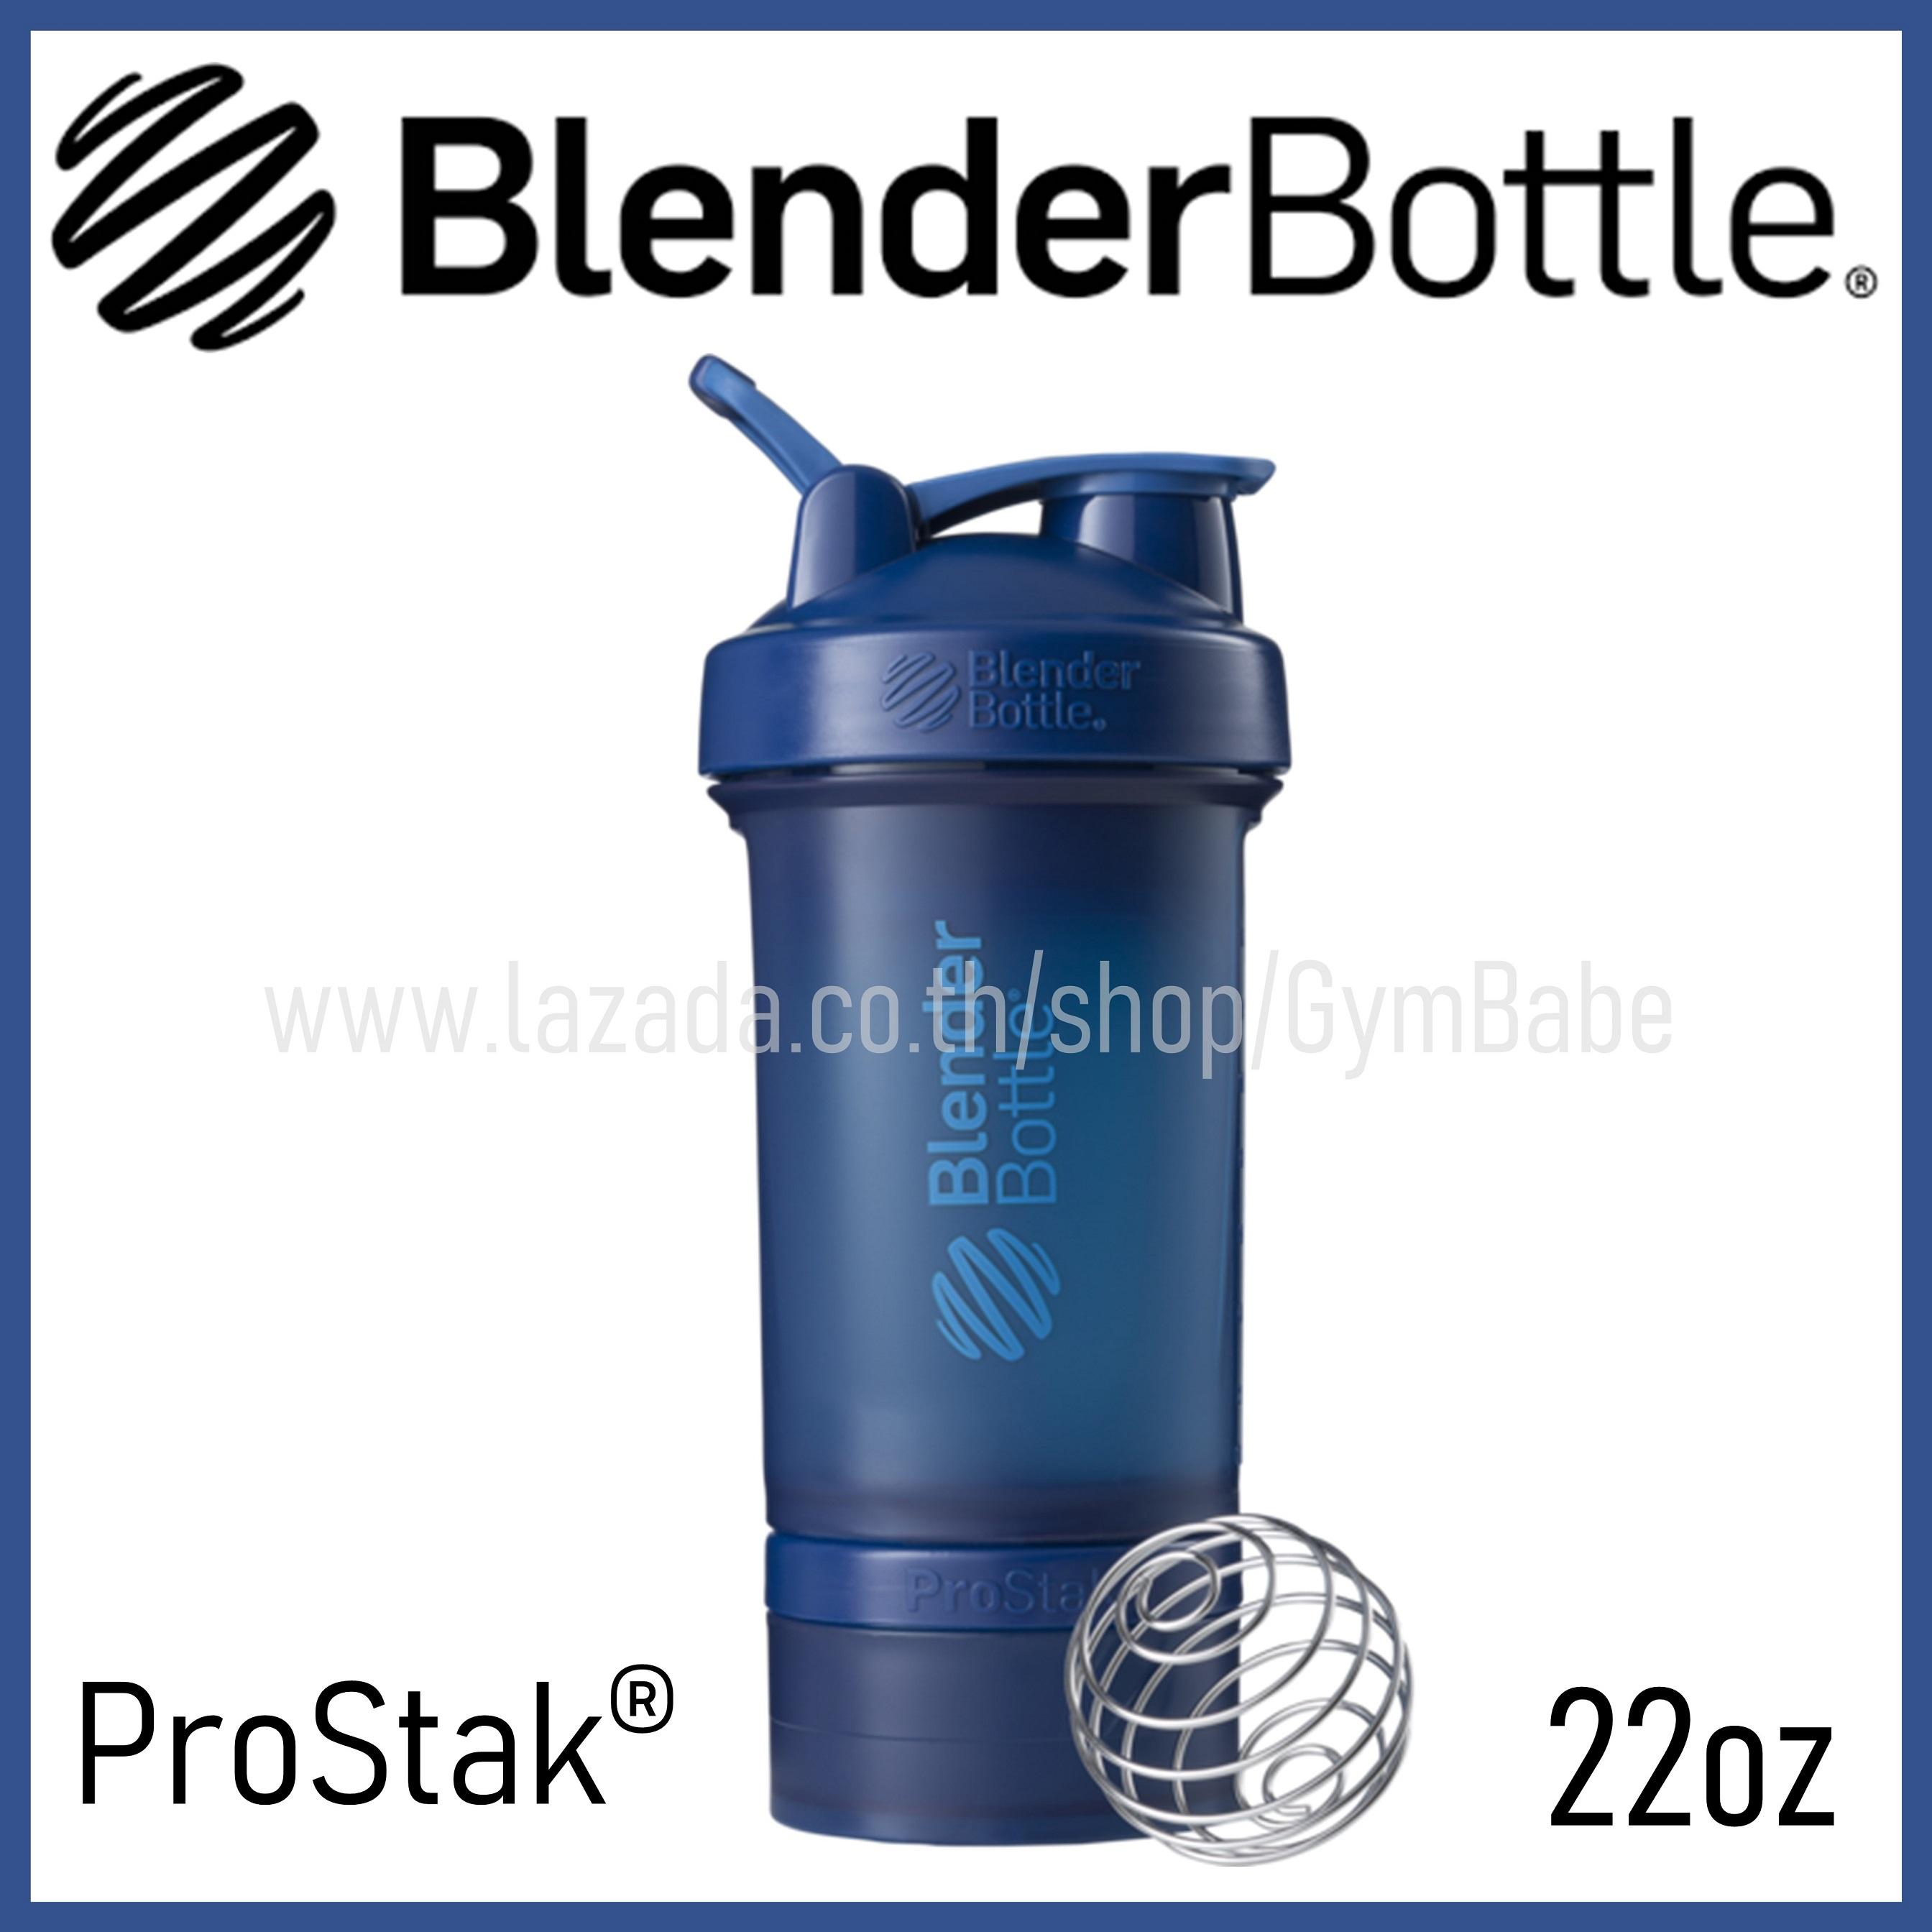 (Navy) แก้วเชค BlenderBottle ของแท้ รุ่น PROSTAK® Shaker Bottle ขนาด 22 oz